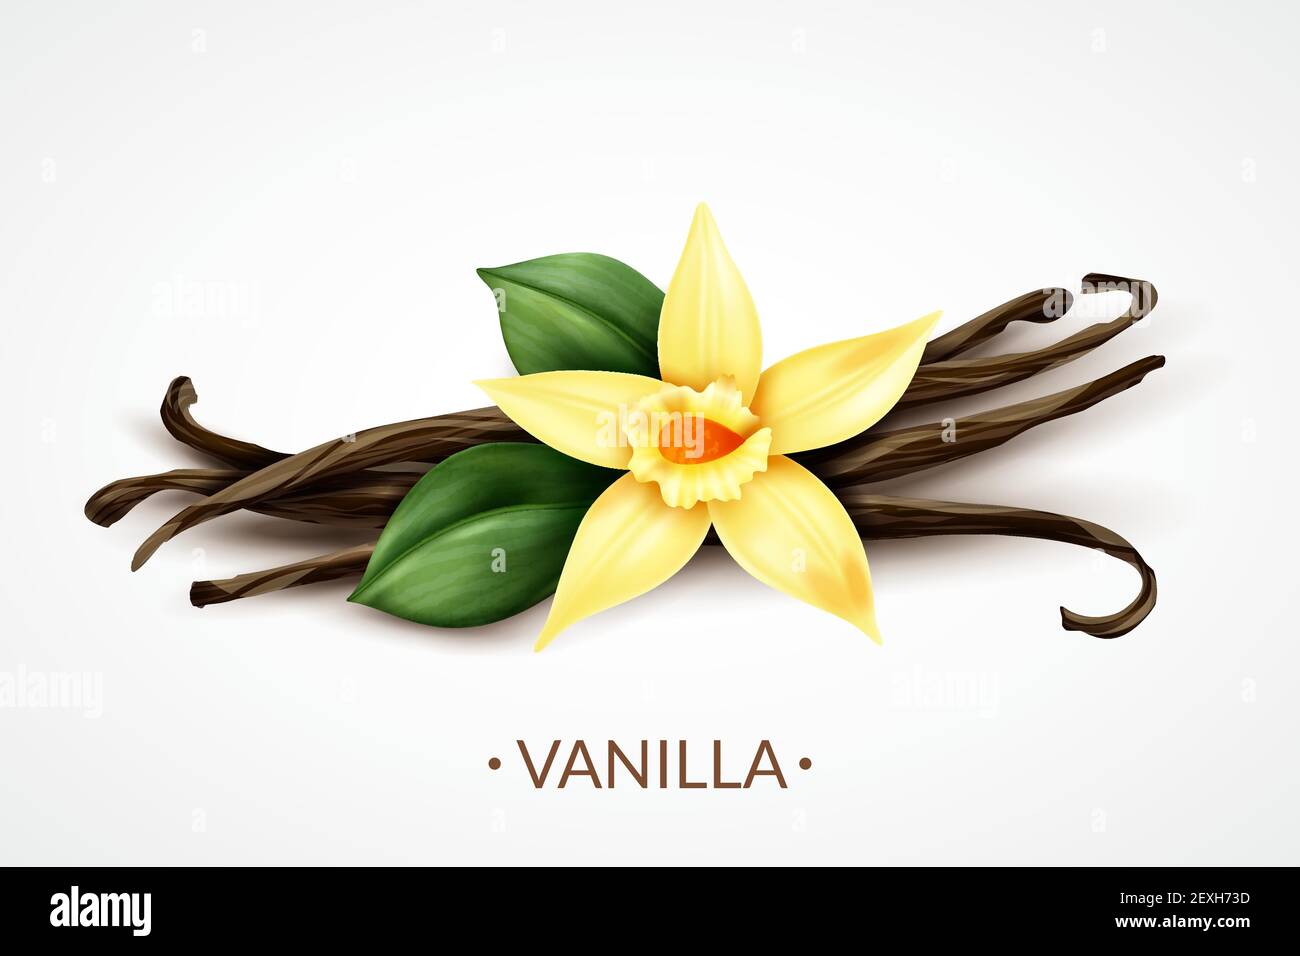 Süß duftende frische Vanilleblume mit getrockneten Samenschoten realistisch Zusammensetzung der unverwechselbaren kulinarischen Aroma Vektor Illustration Stock Vektor